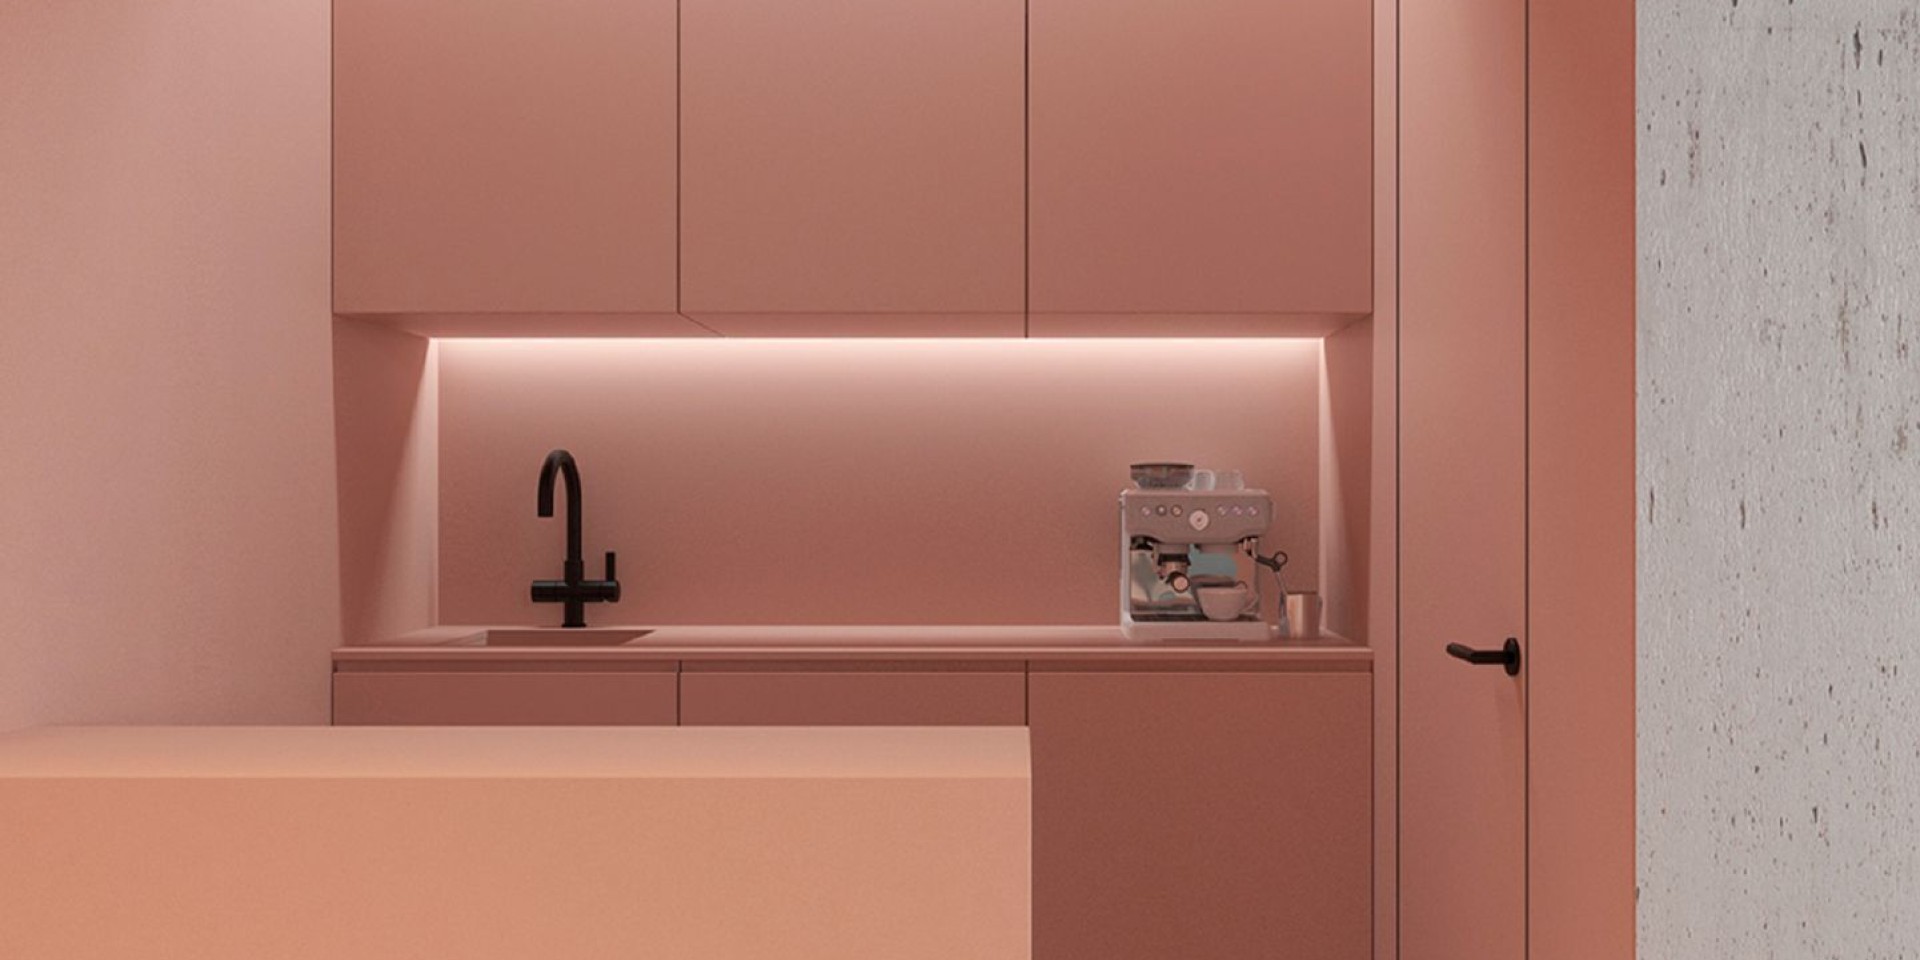 Inspiration att måla om kök och matplats, kök målat i en rosa nyans